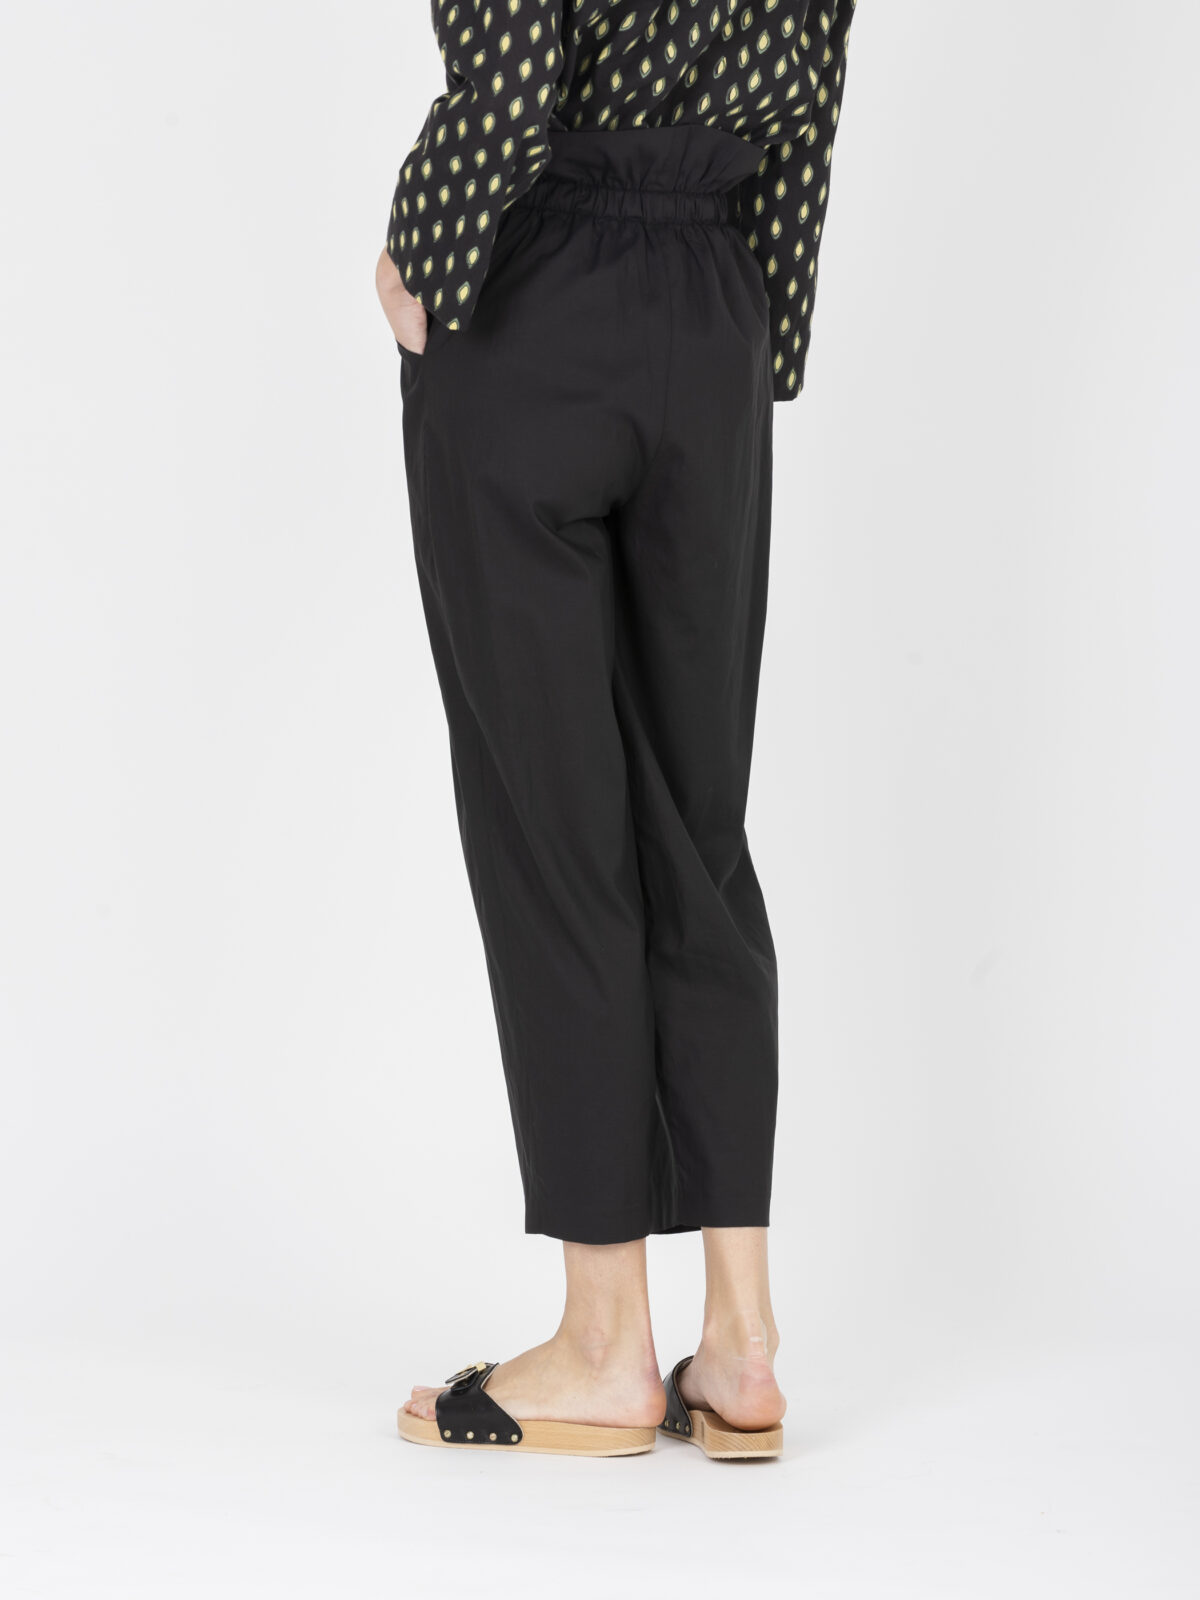 casimir-black-pants-lightweight-poplin-cotton-high-waist-diagonal-pockets-vanessa-bruno-matchboxathens